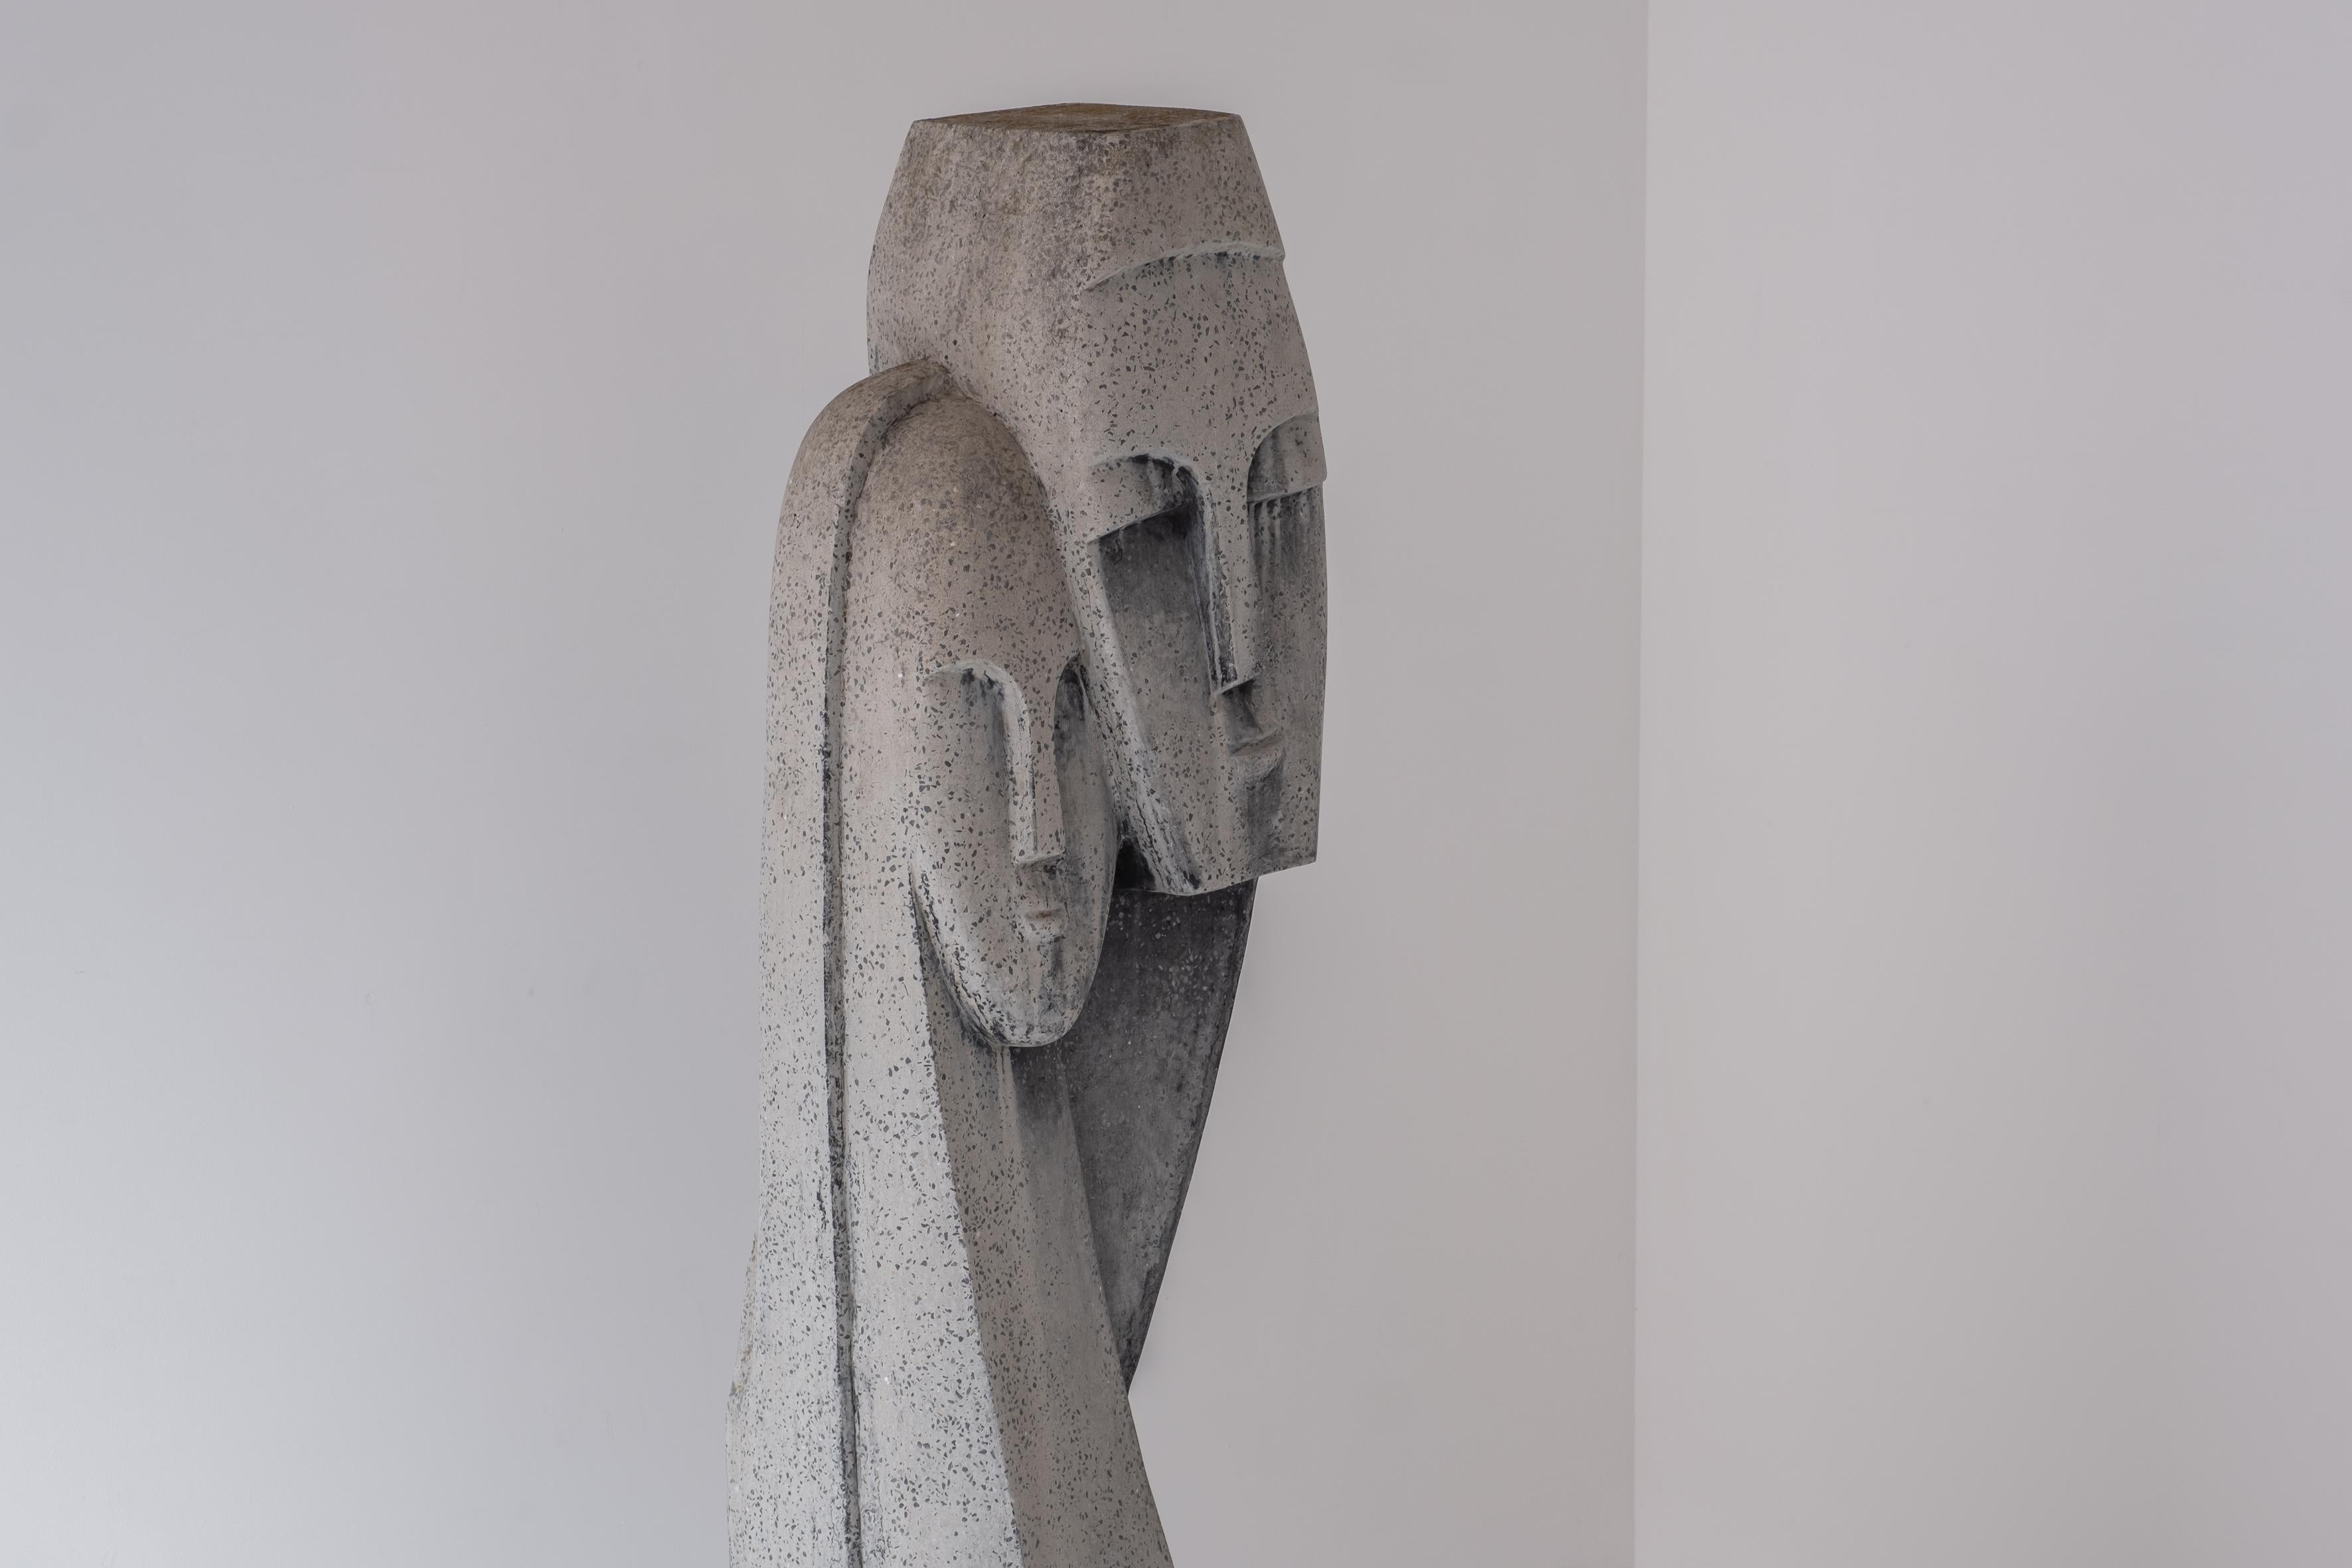 European Interesting ‘Devotion’ Head Sculpture in Terrazzo and Concrete, 1970s For Sale